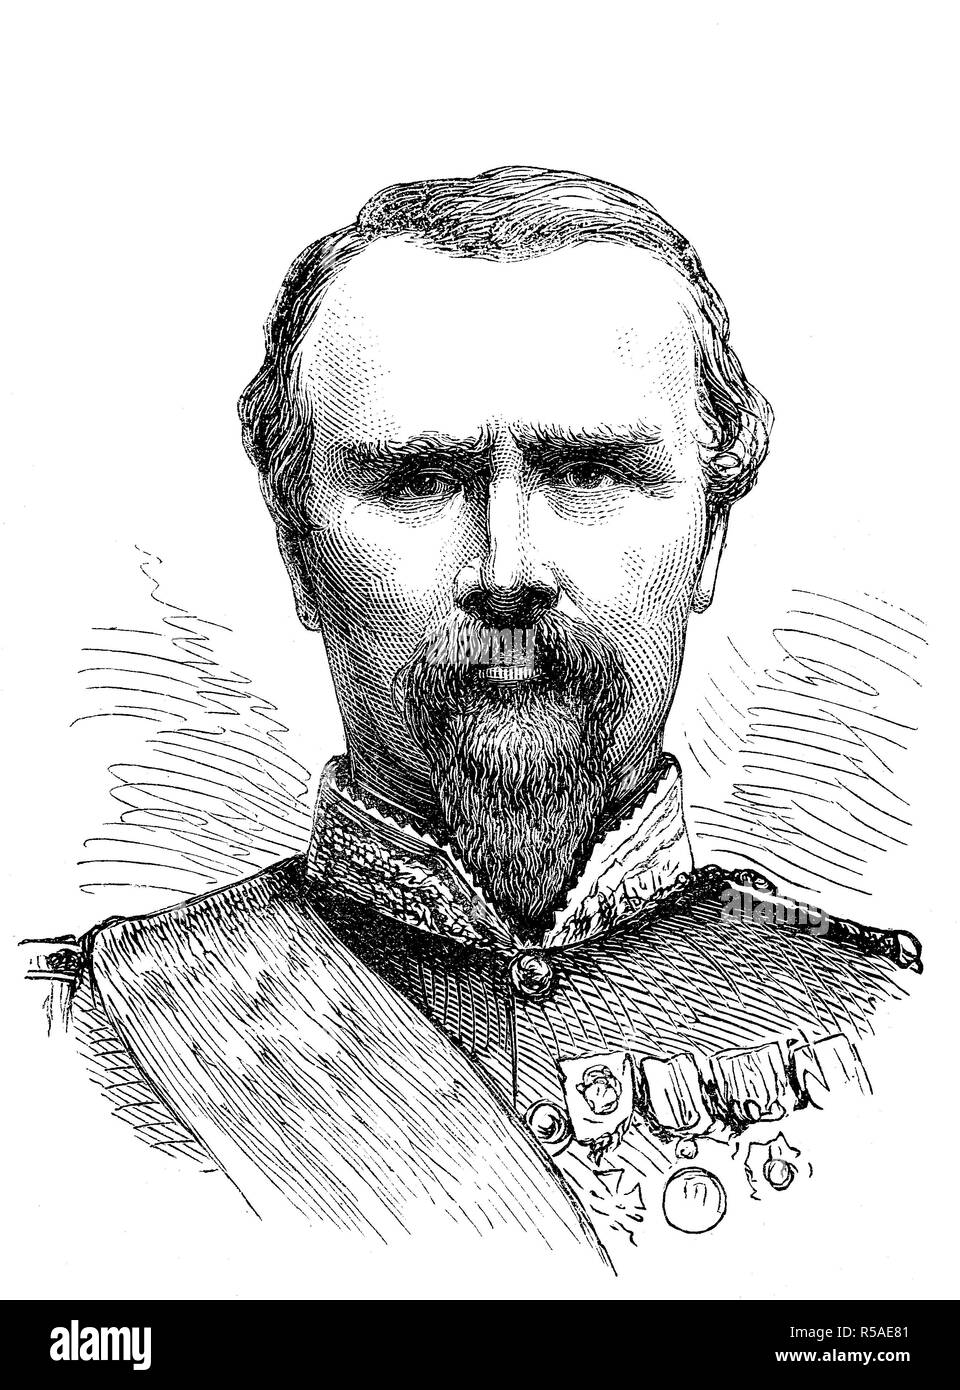 Pierre Louis Charles Achille de Failly, Januar 21, 1810, 15. November 1892, französischer General, Holzschnitt, Porträt, Frankreich Stockfoto